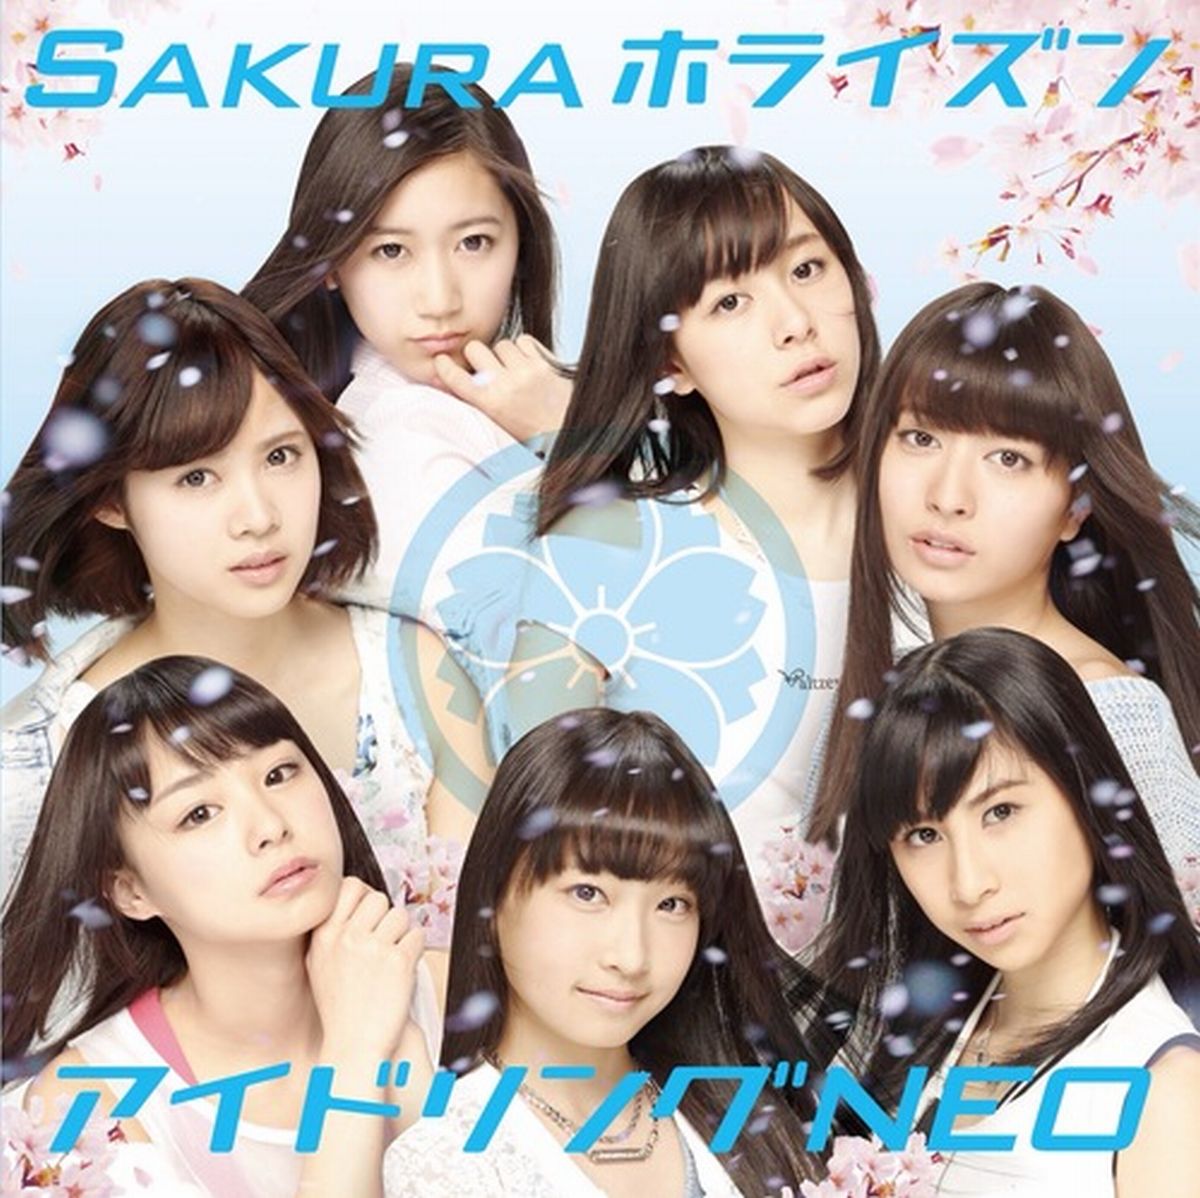 Sakuraホライズン(初回限定盤 CD+Blu-ray)